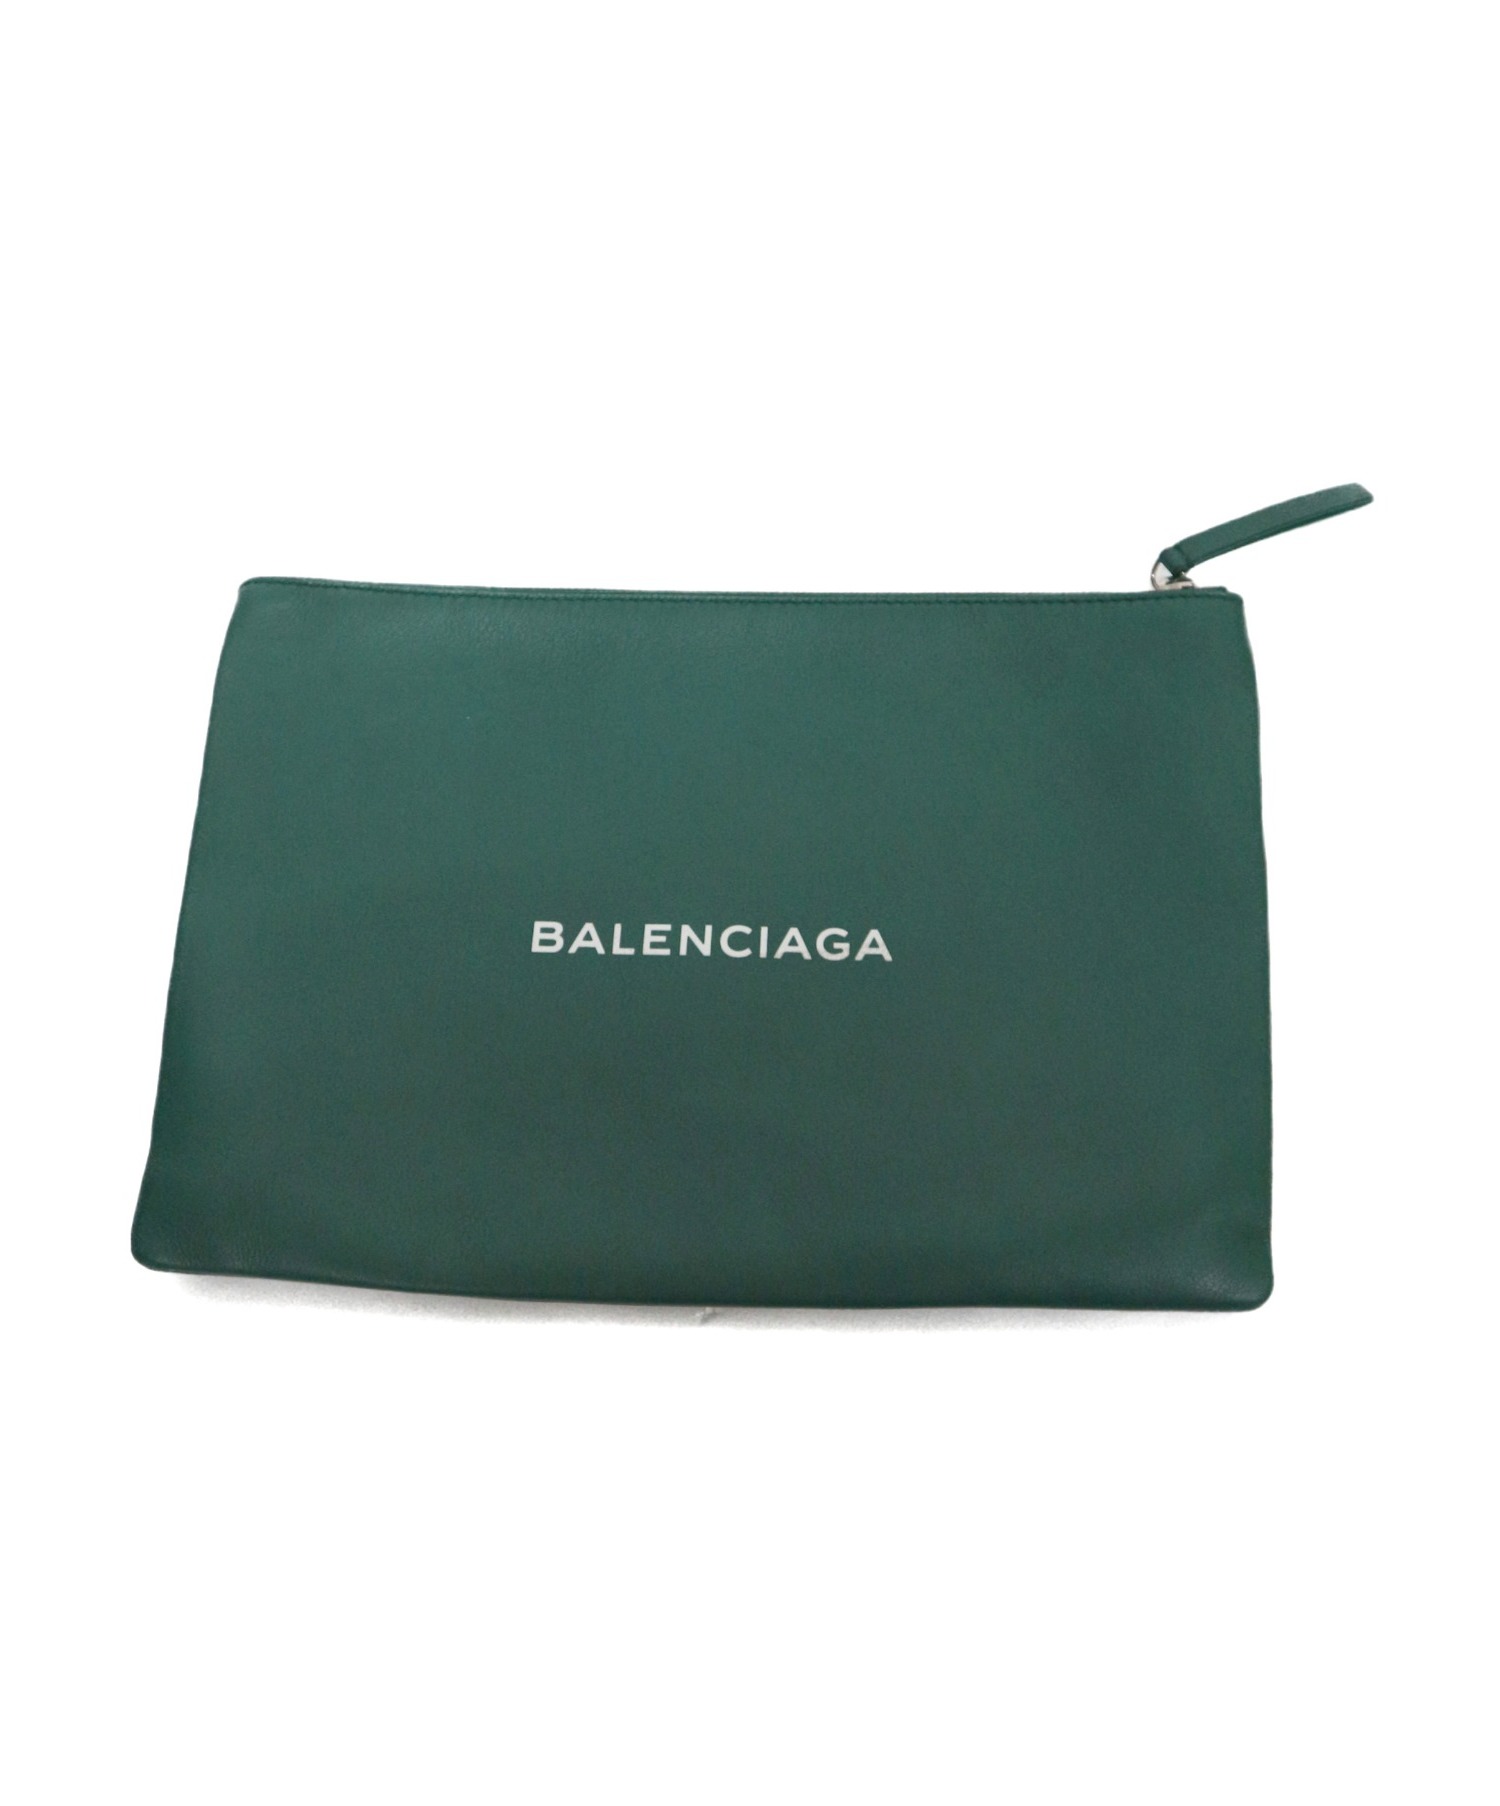 BALENCIAGA (バレンシアガ) ロゴクラッチバッグ グリーン EVERYDAY 485110 3060・Z・1669